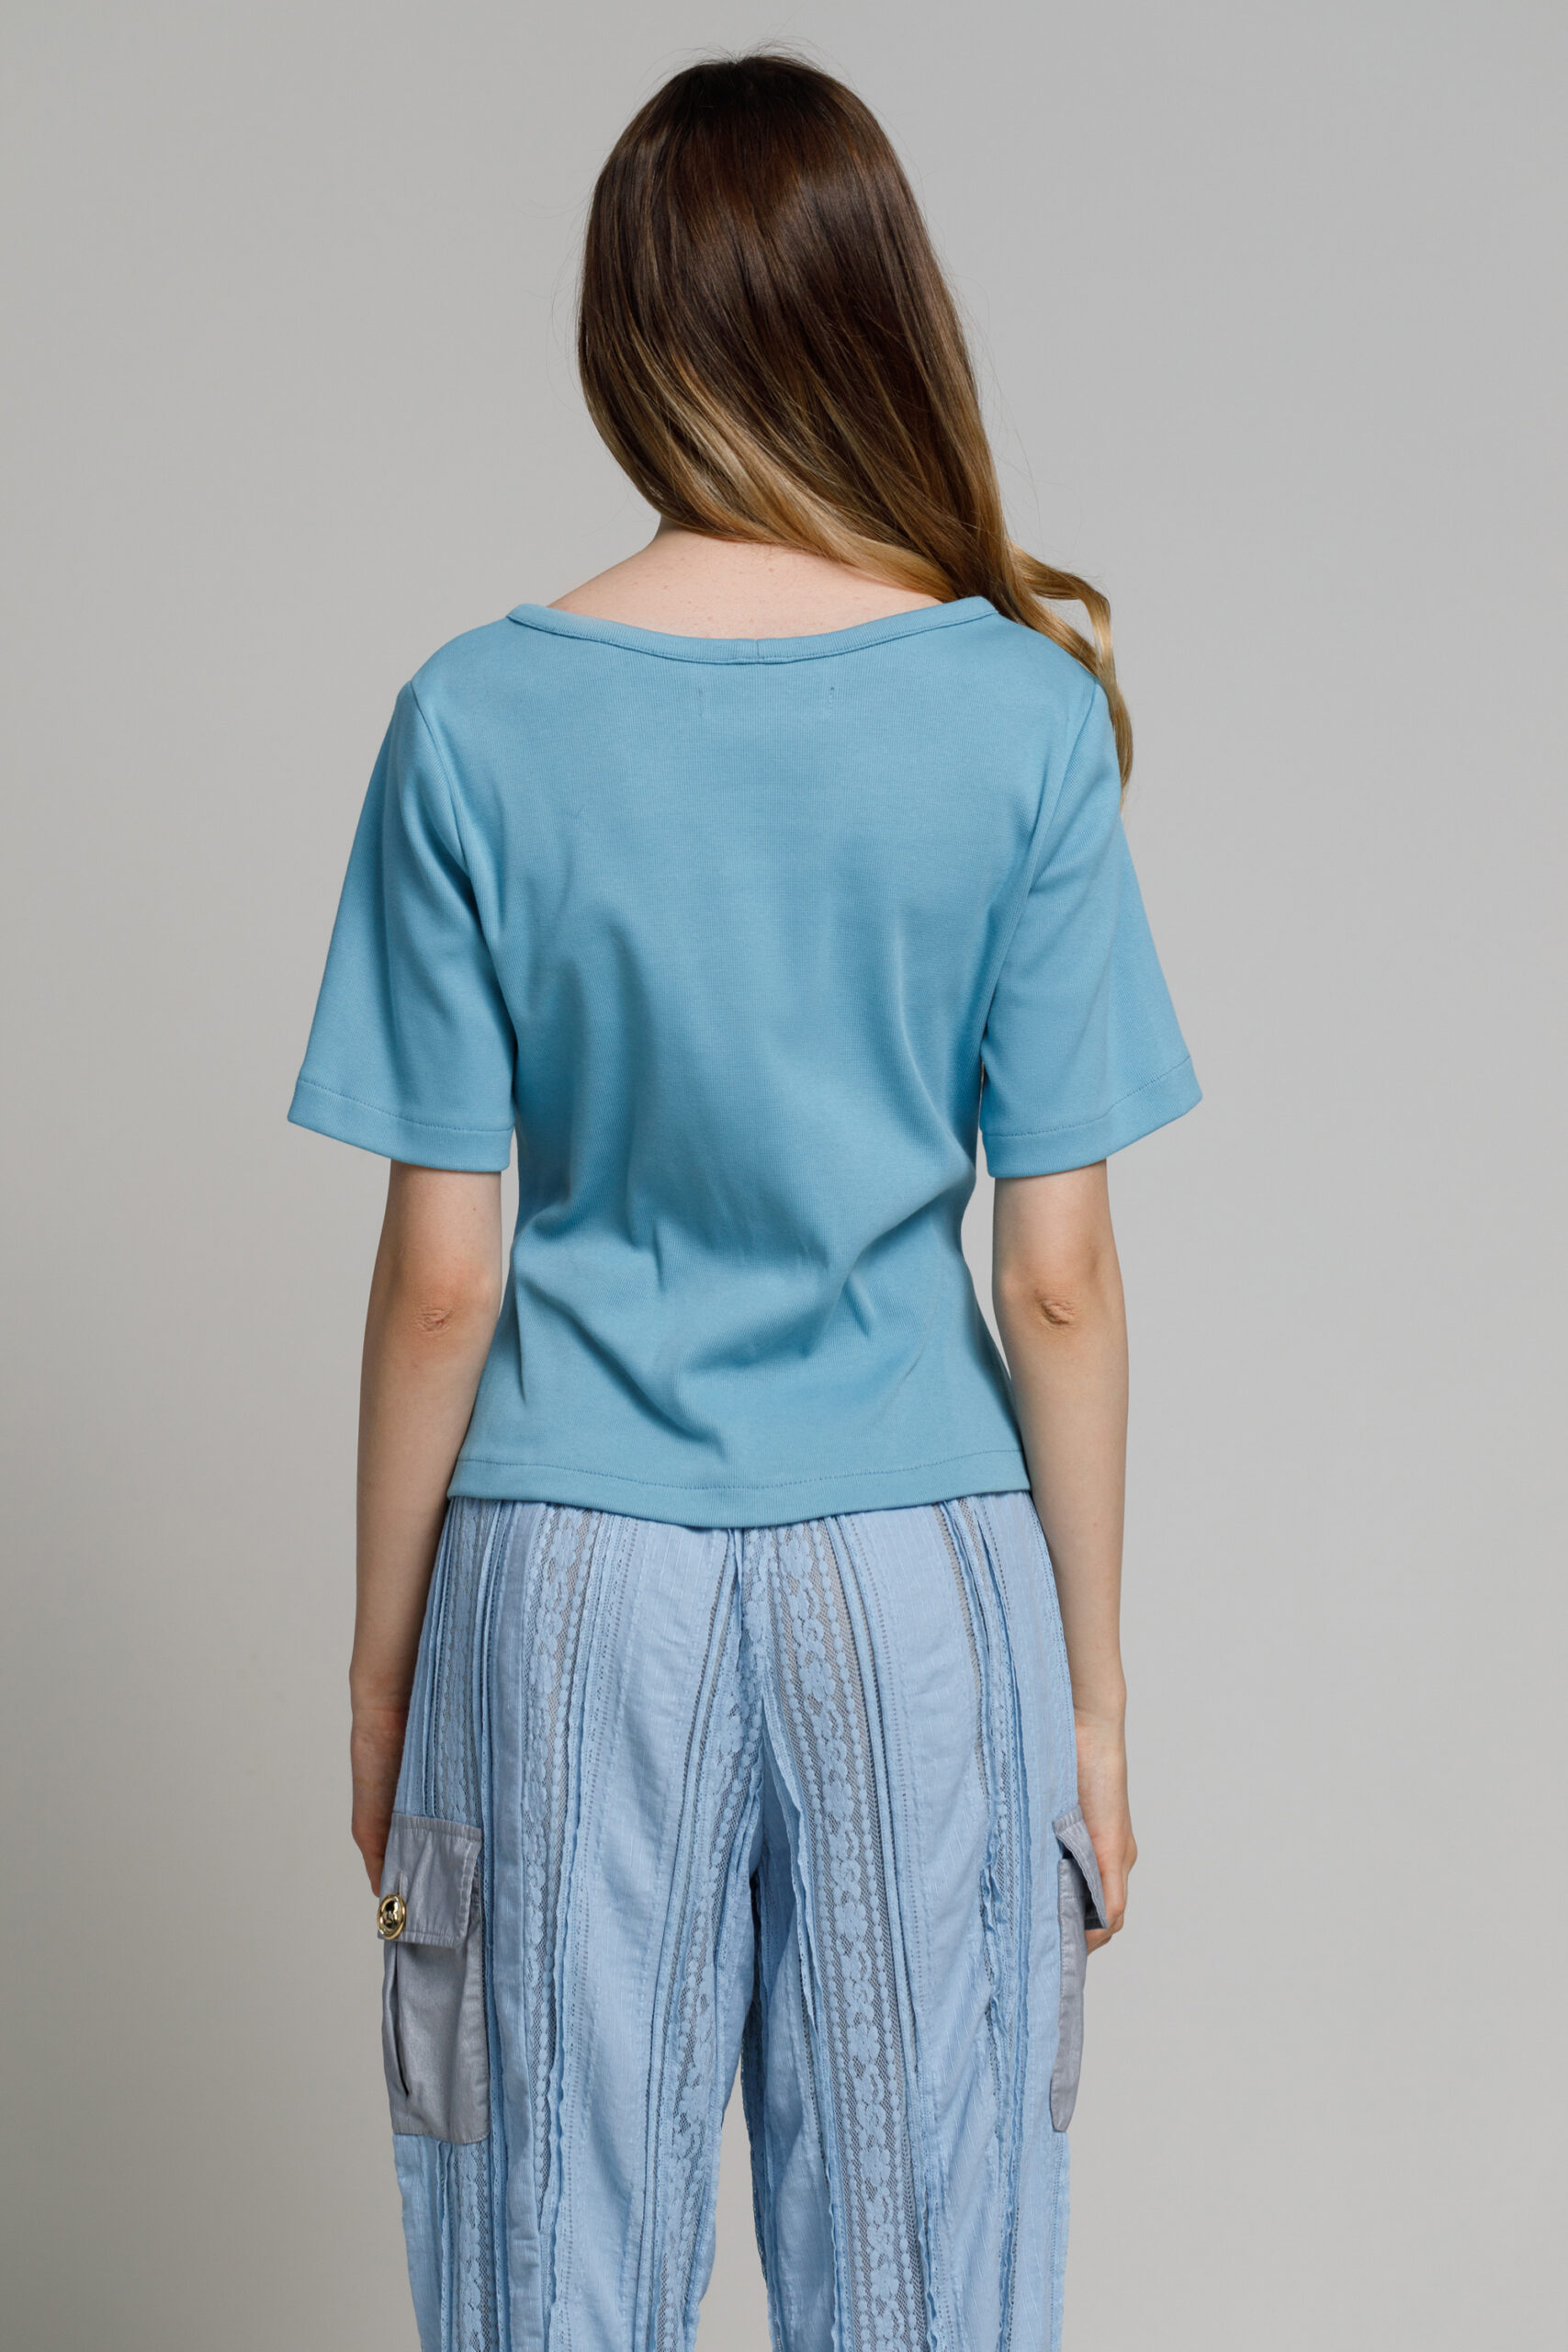 Bluza CHIARA bleu. Materiale naturale, design unicat, cu broderie si aplicatii handmade